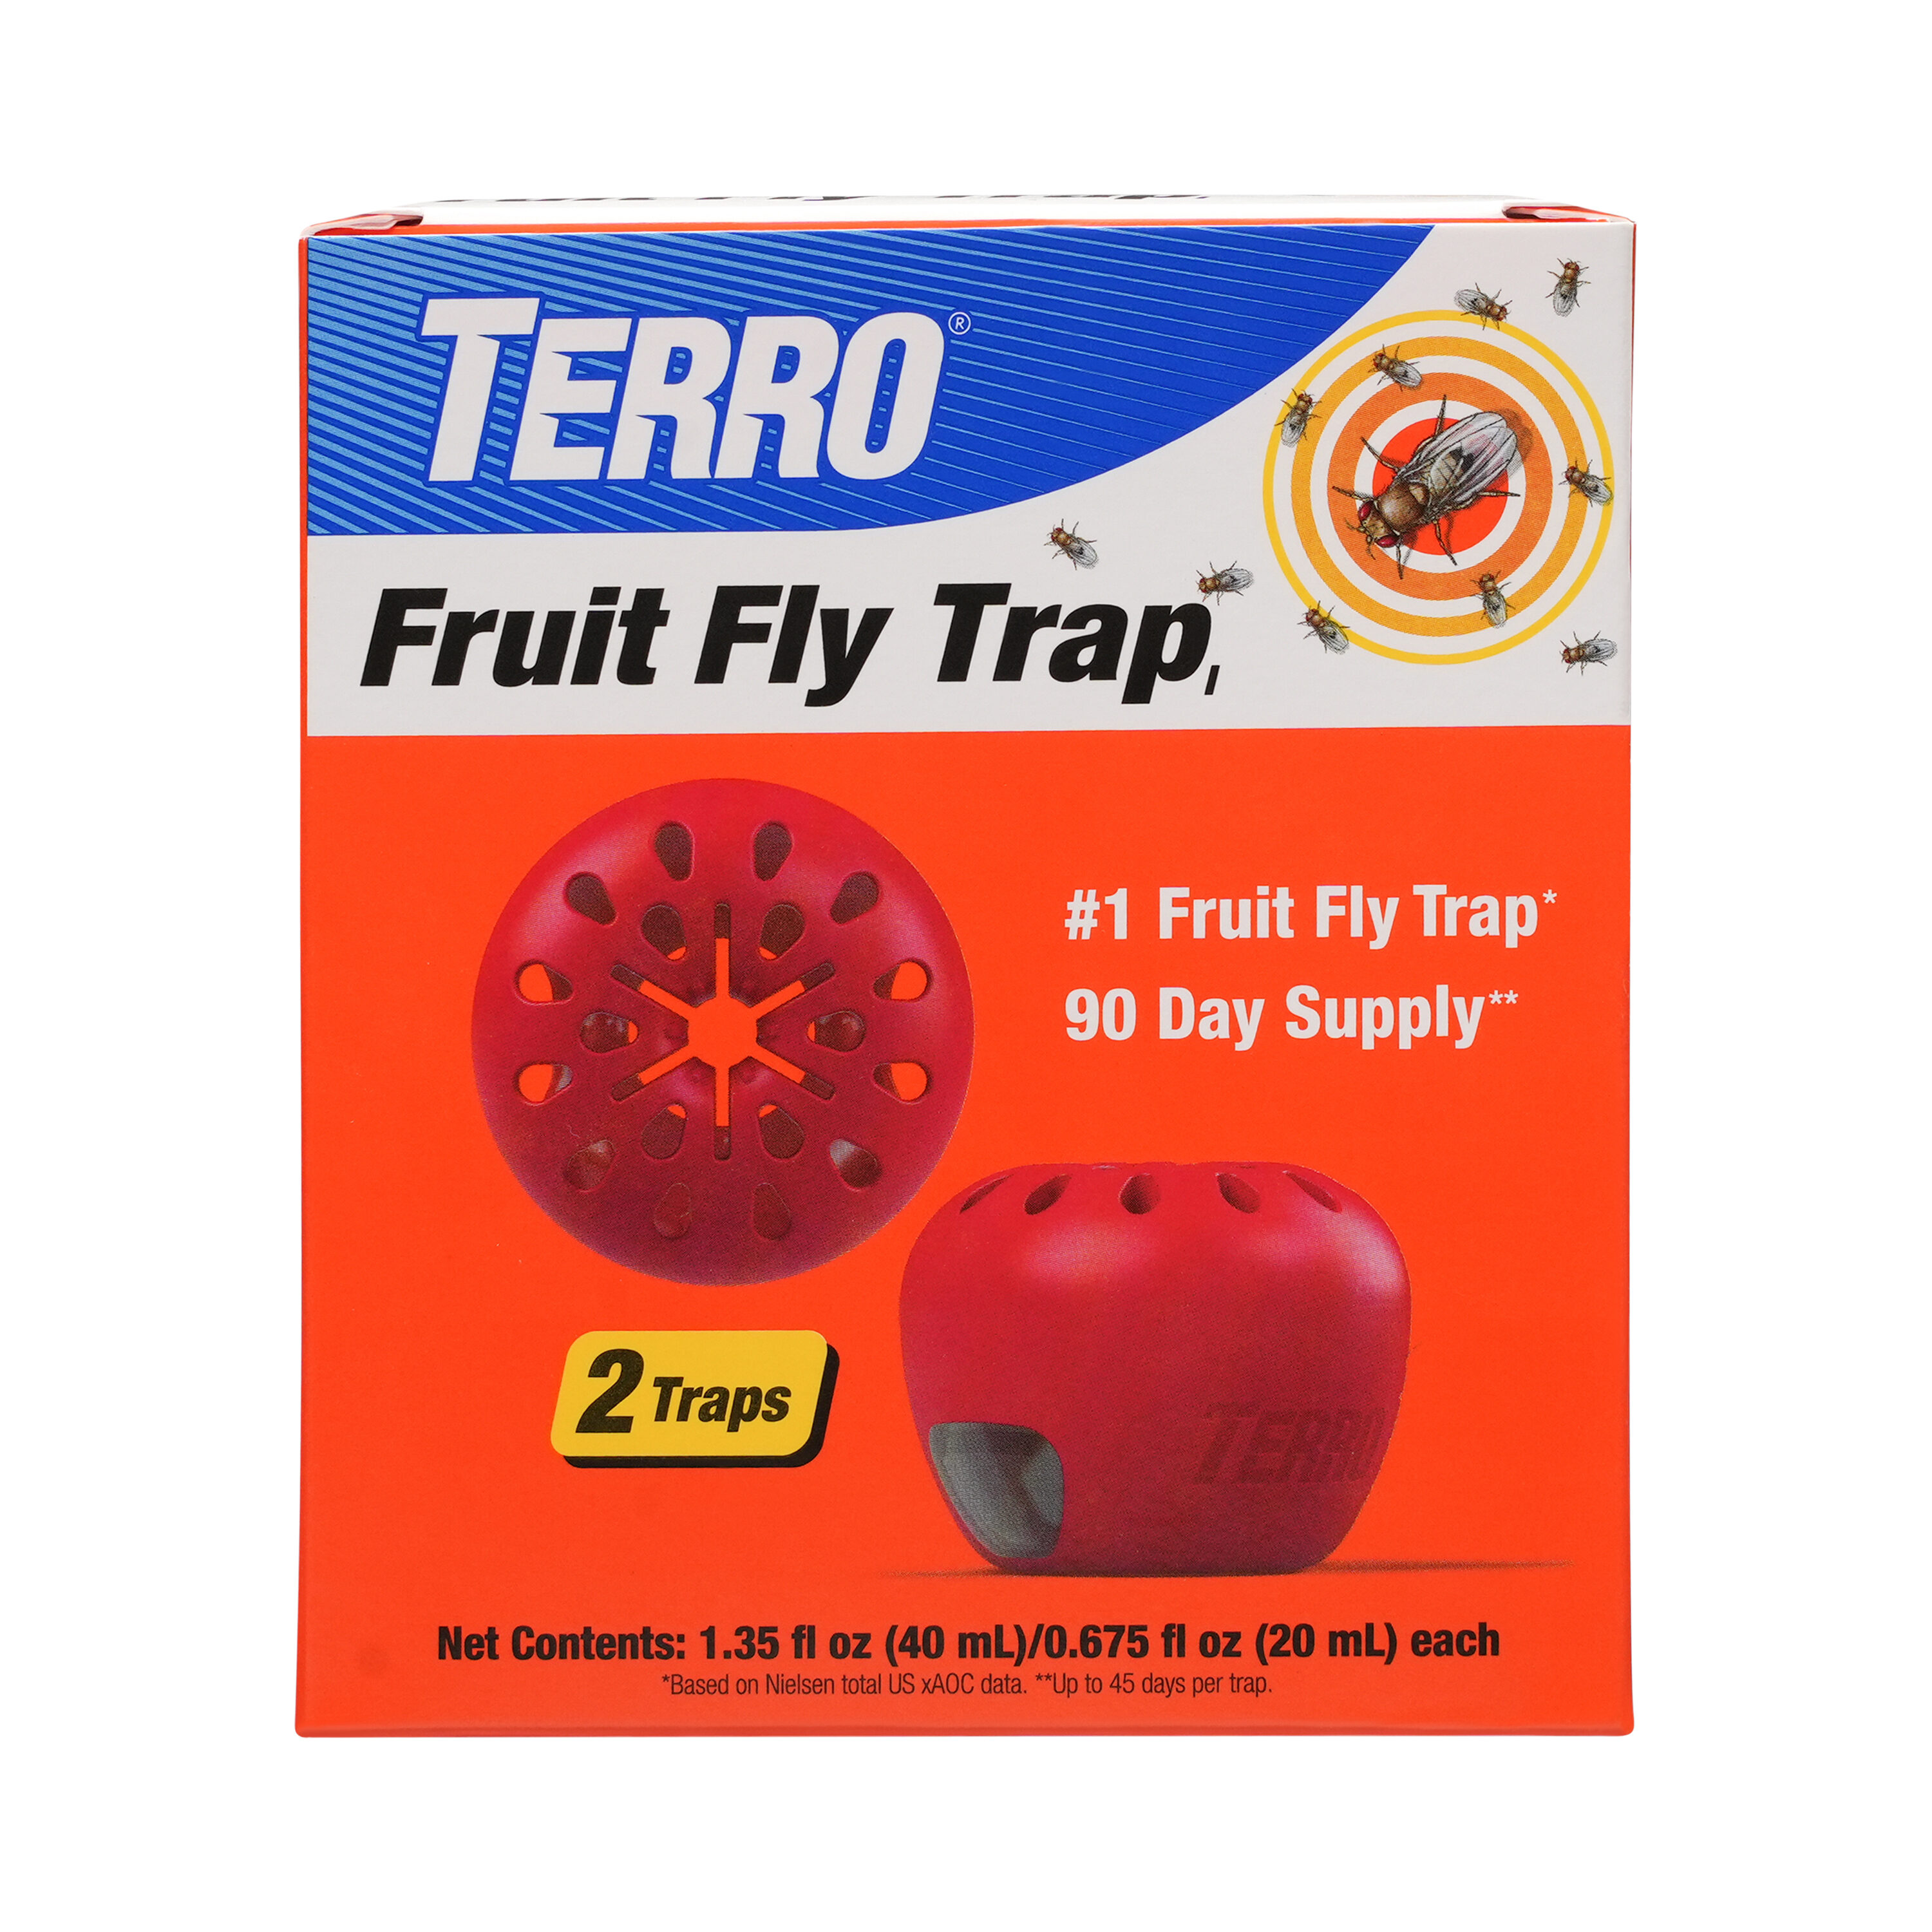  20 Pack Sticky Fly Ribbon Catcher, Fruit Fly Traps